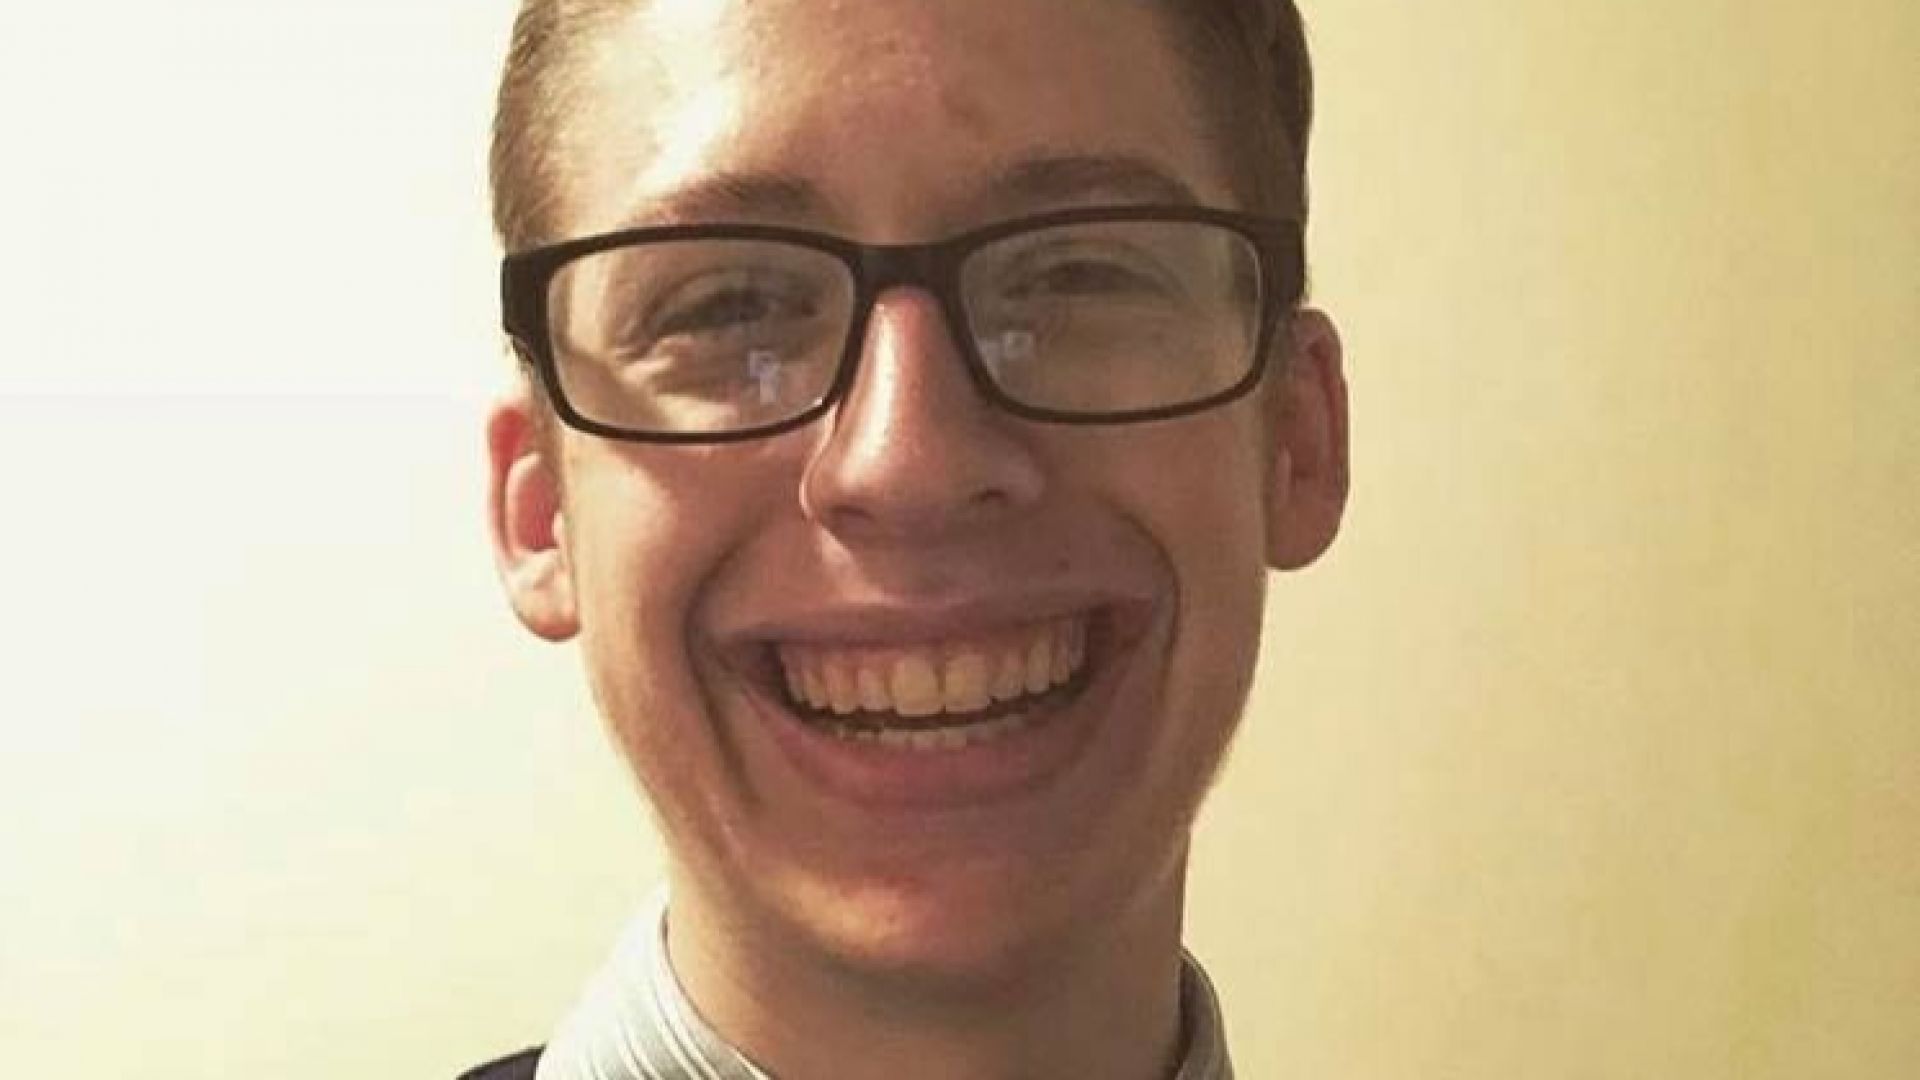 18 годишният Итън Линденбергер от Охайо отпразнува своето пълнолетие като си